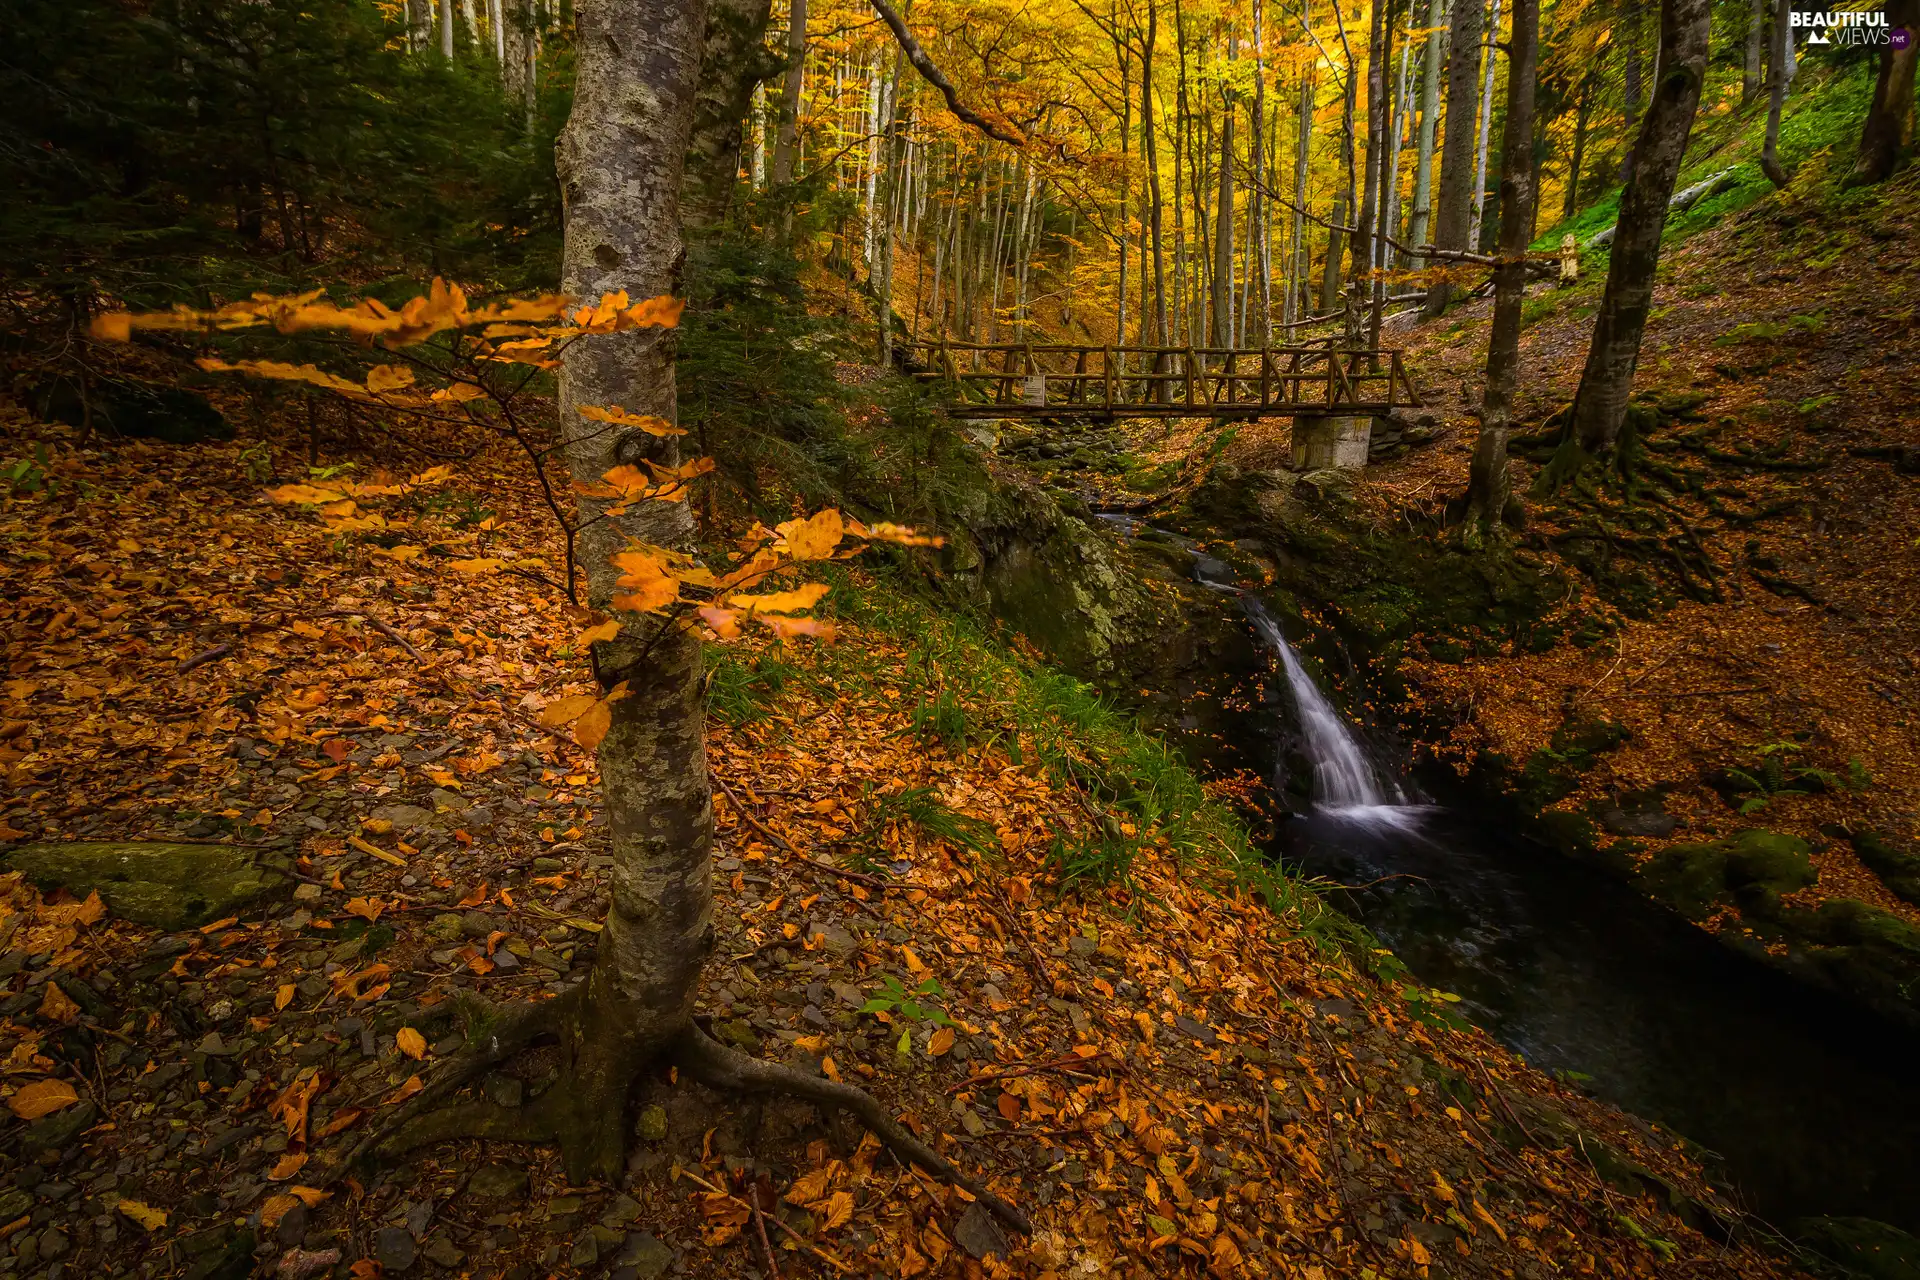 River, autumn, bridges, Leaf, wooden, forest